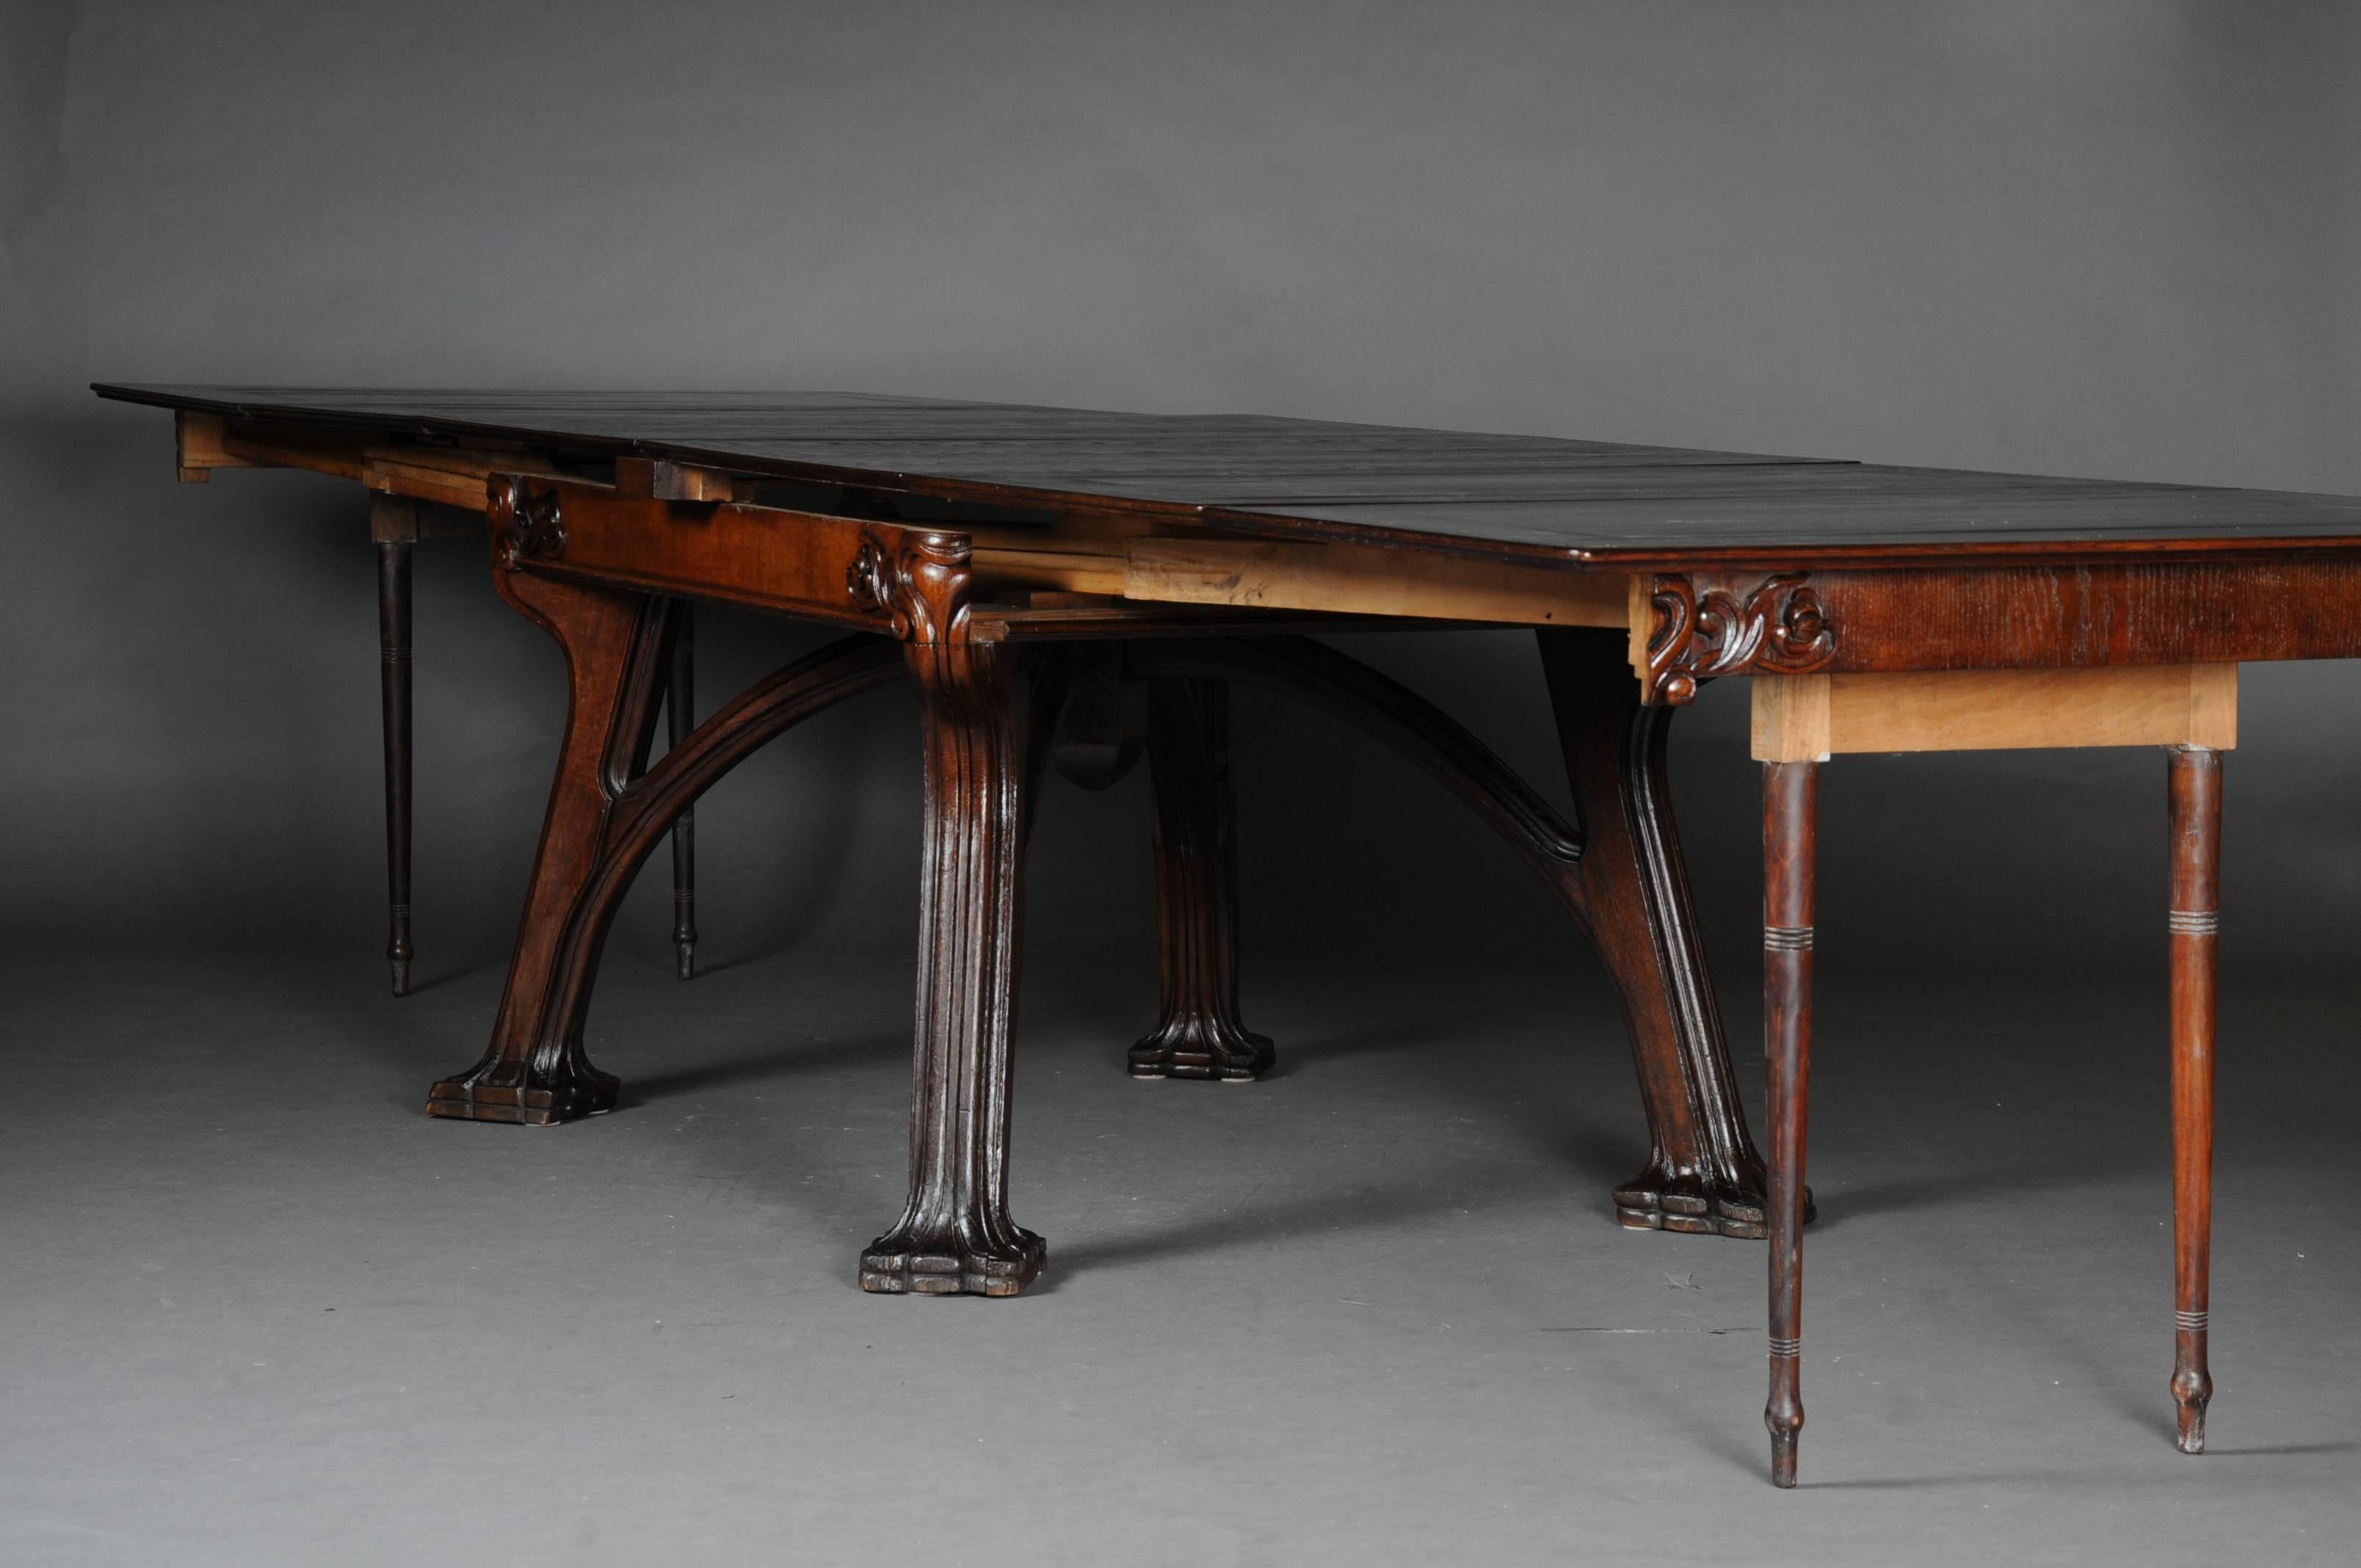 19th Century Unique Extendable Table, Art Nouveau, Eugene Gaillard, Solid Oak